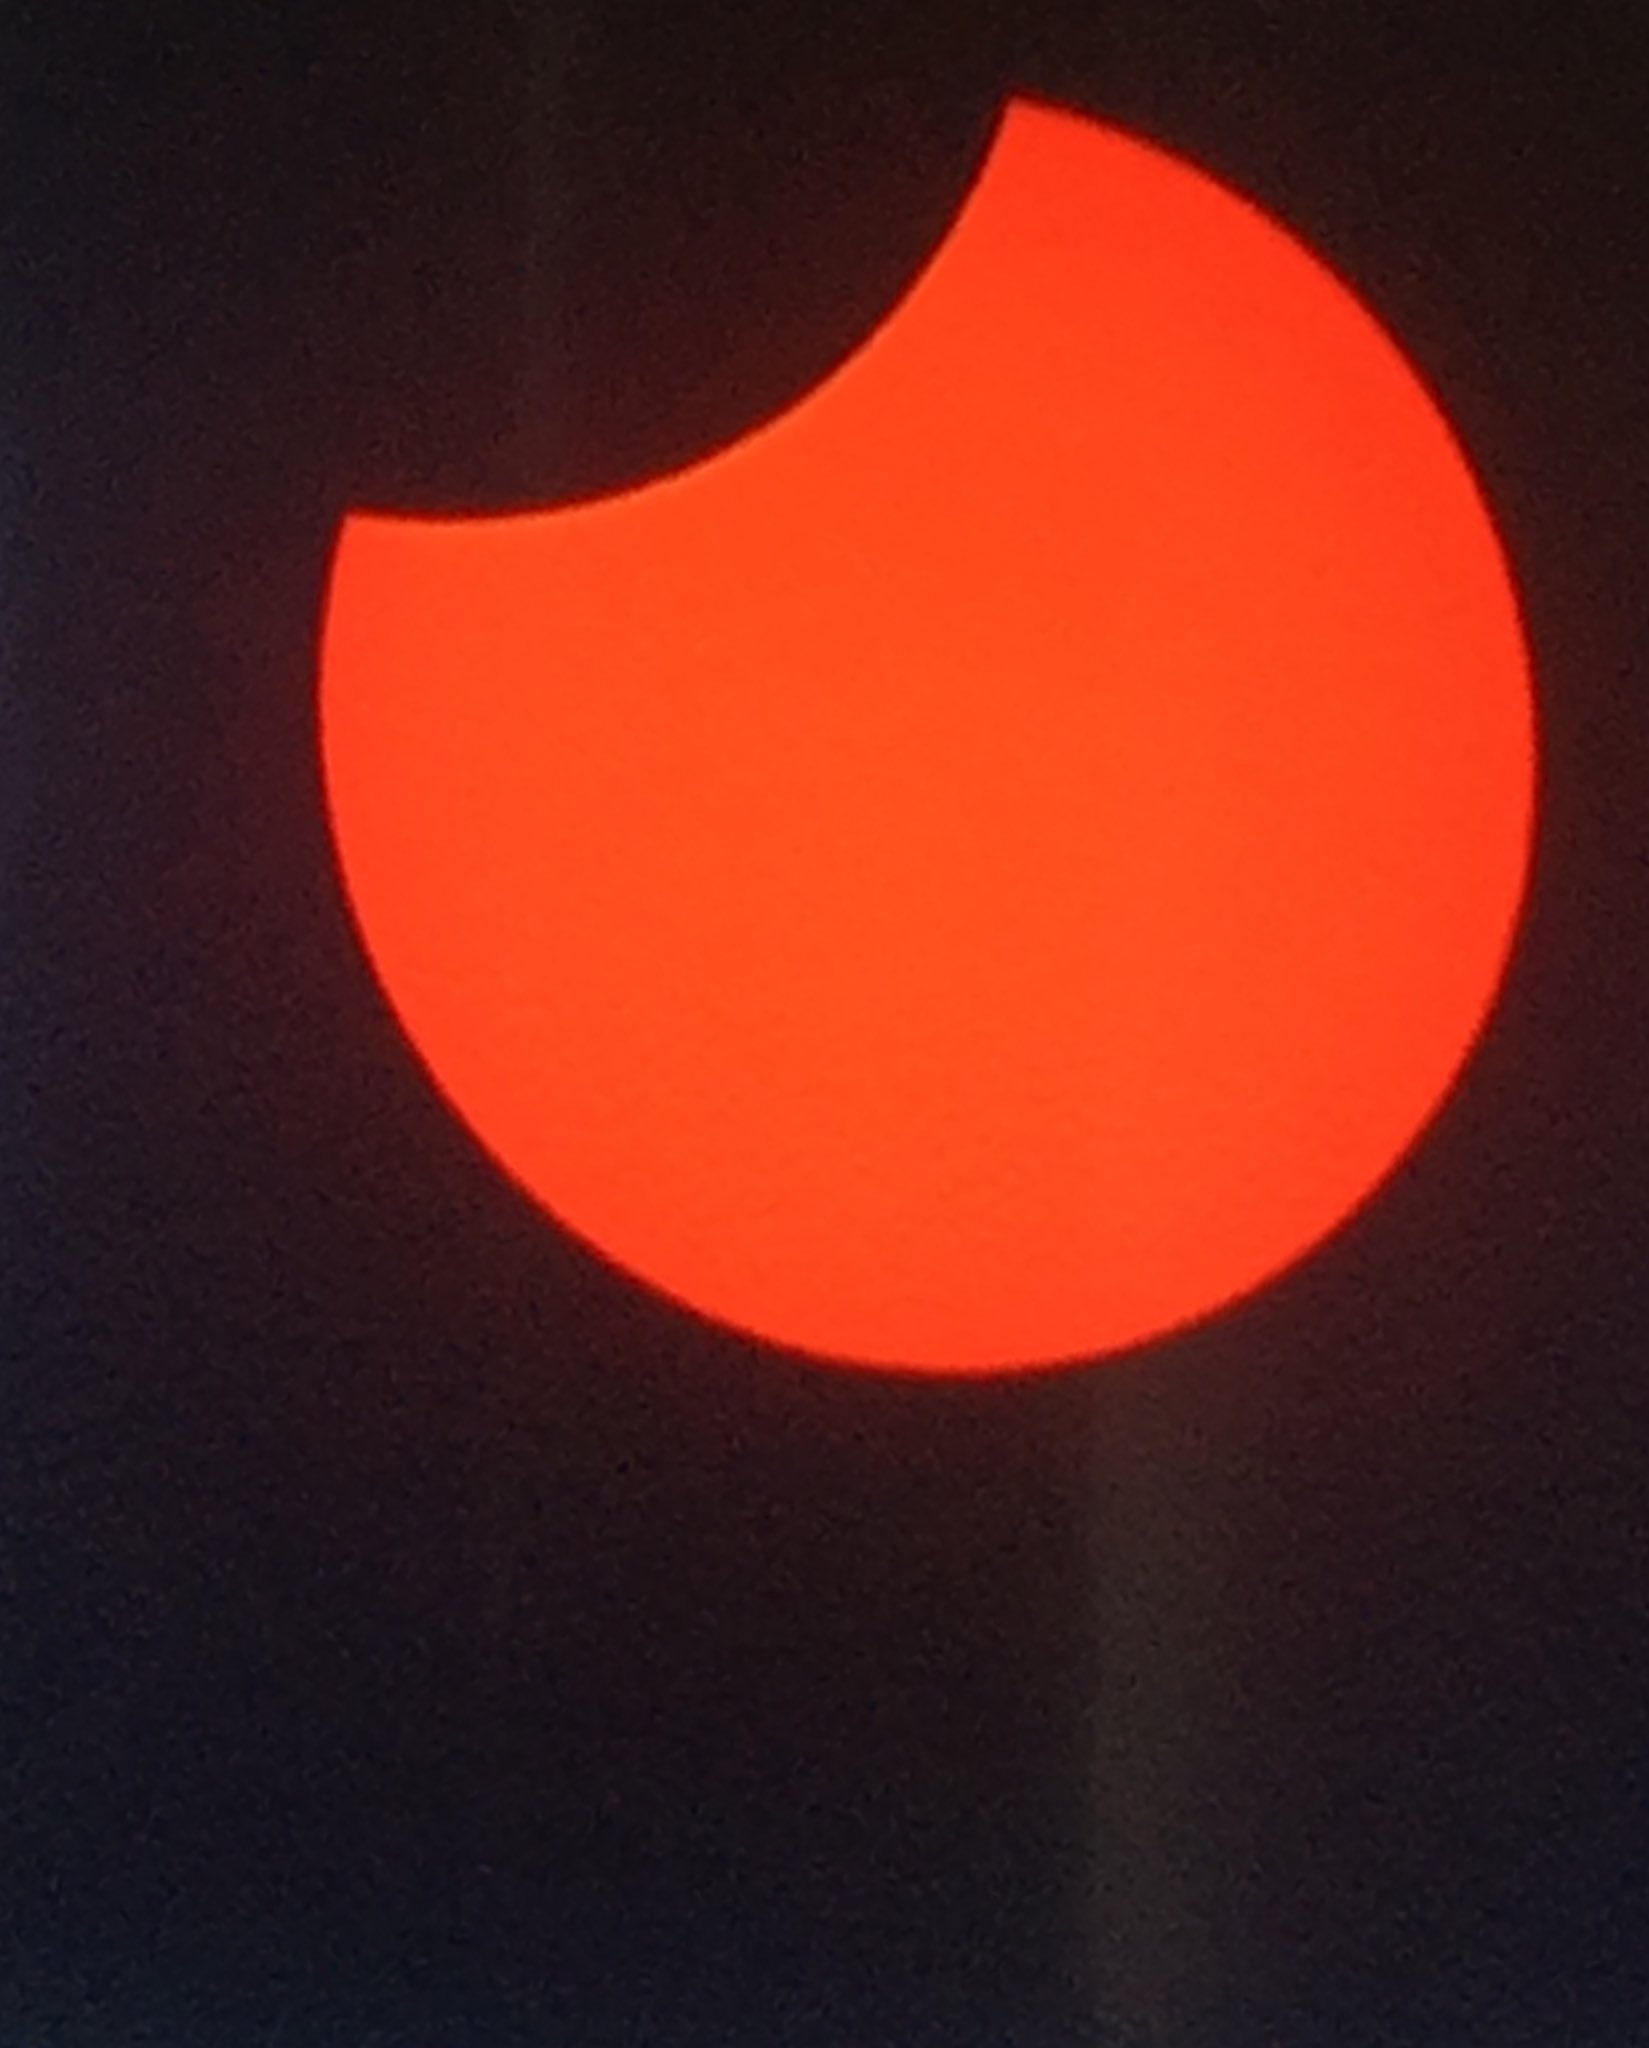 Los internautas están compartiendo las imágenes del eclipse solar total que se verá en Chile, Argentina y otros países de Sudamérica